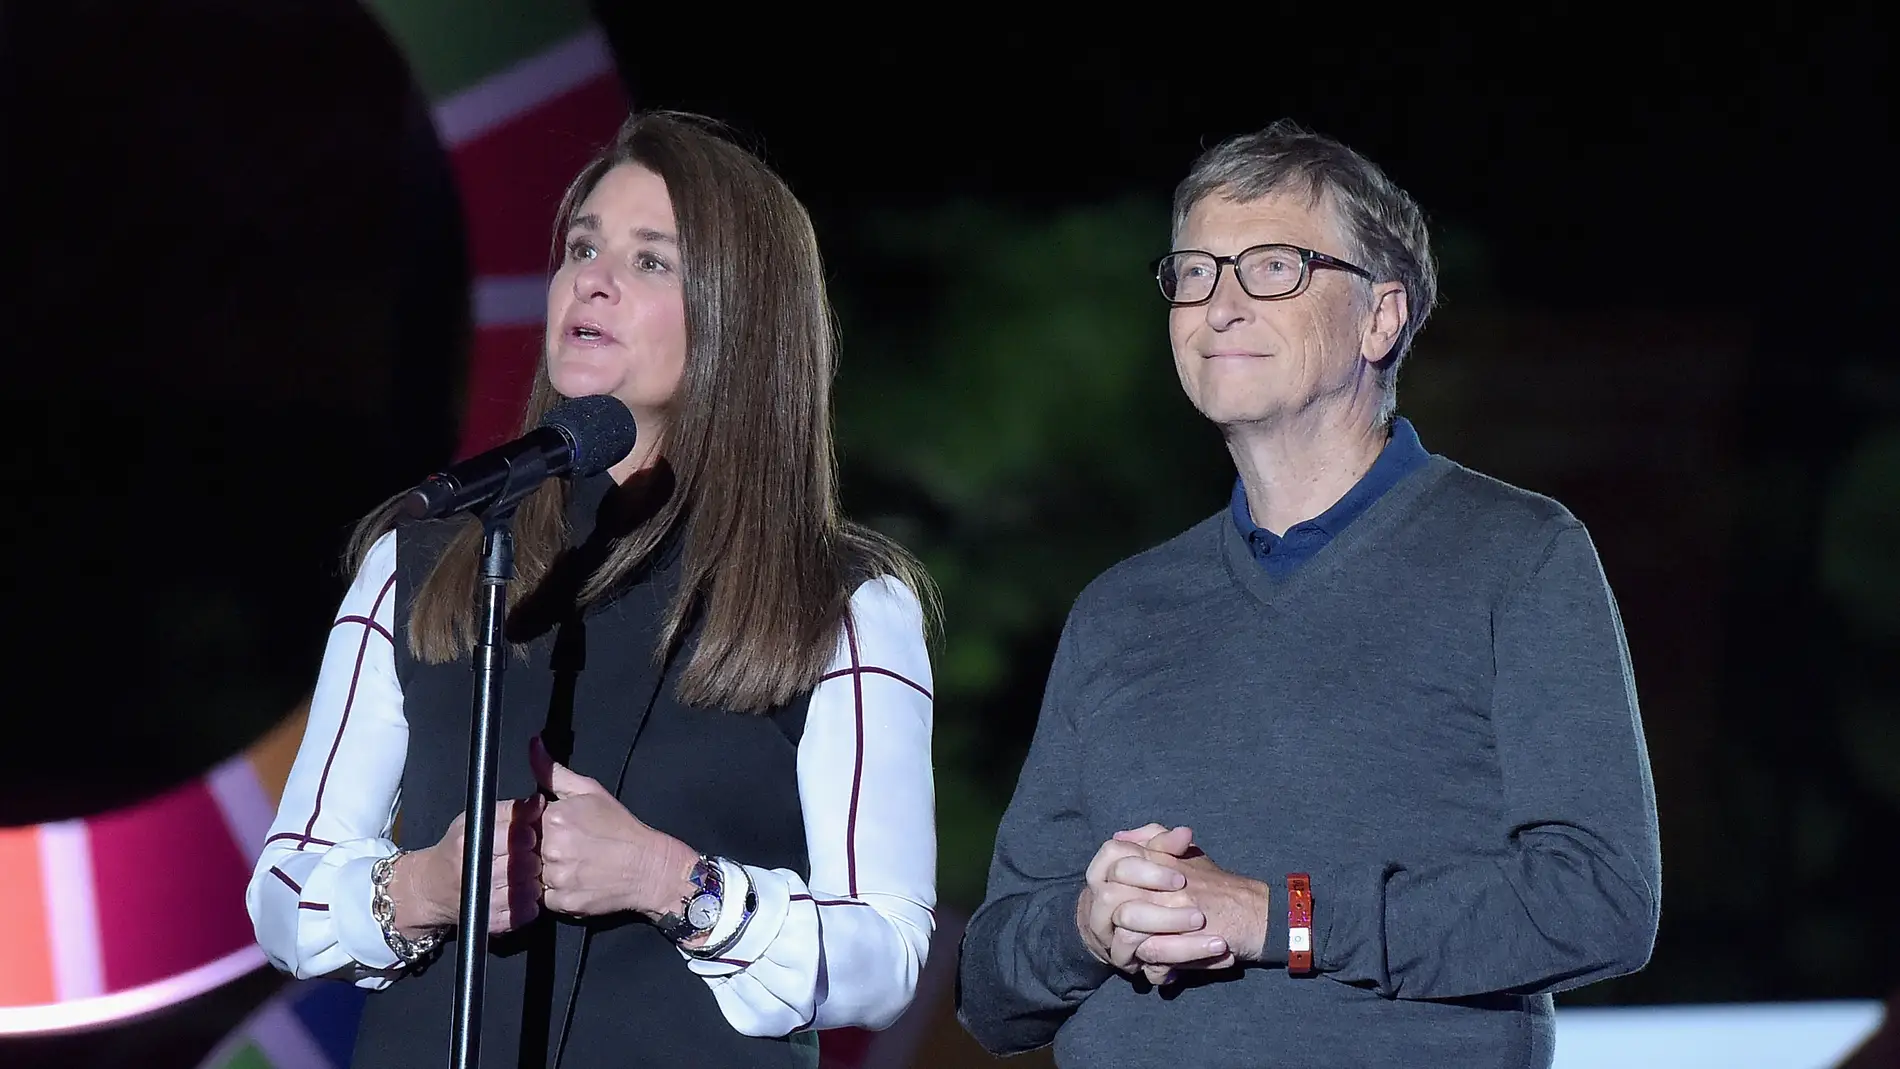 Bill Gates anuncia su divorcio tras 27 años de matrimonio 